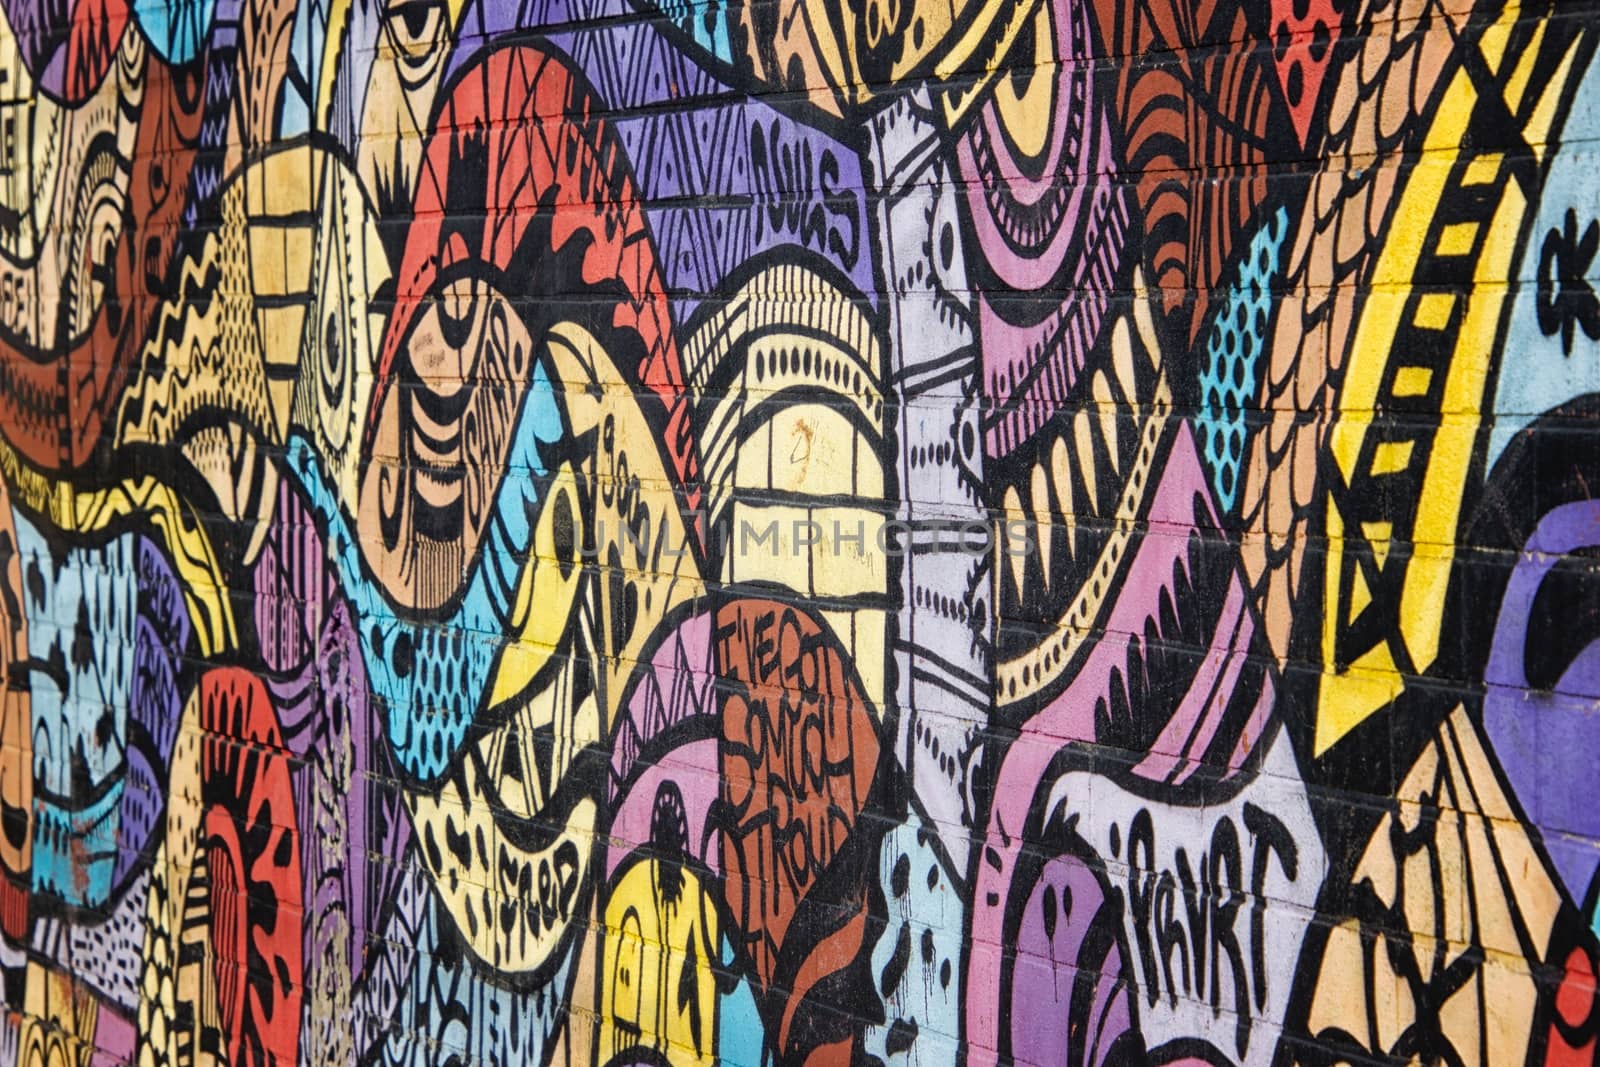 Colorful mural - Street art